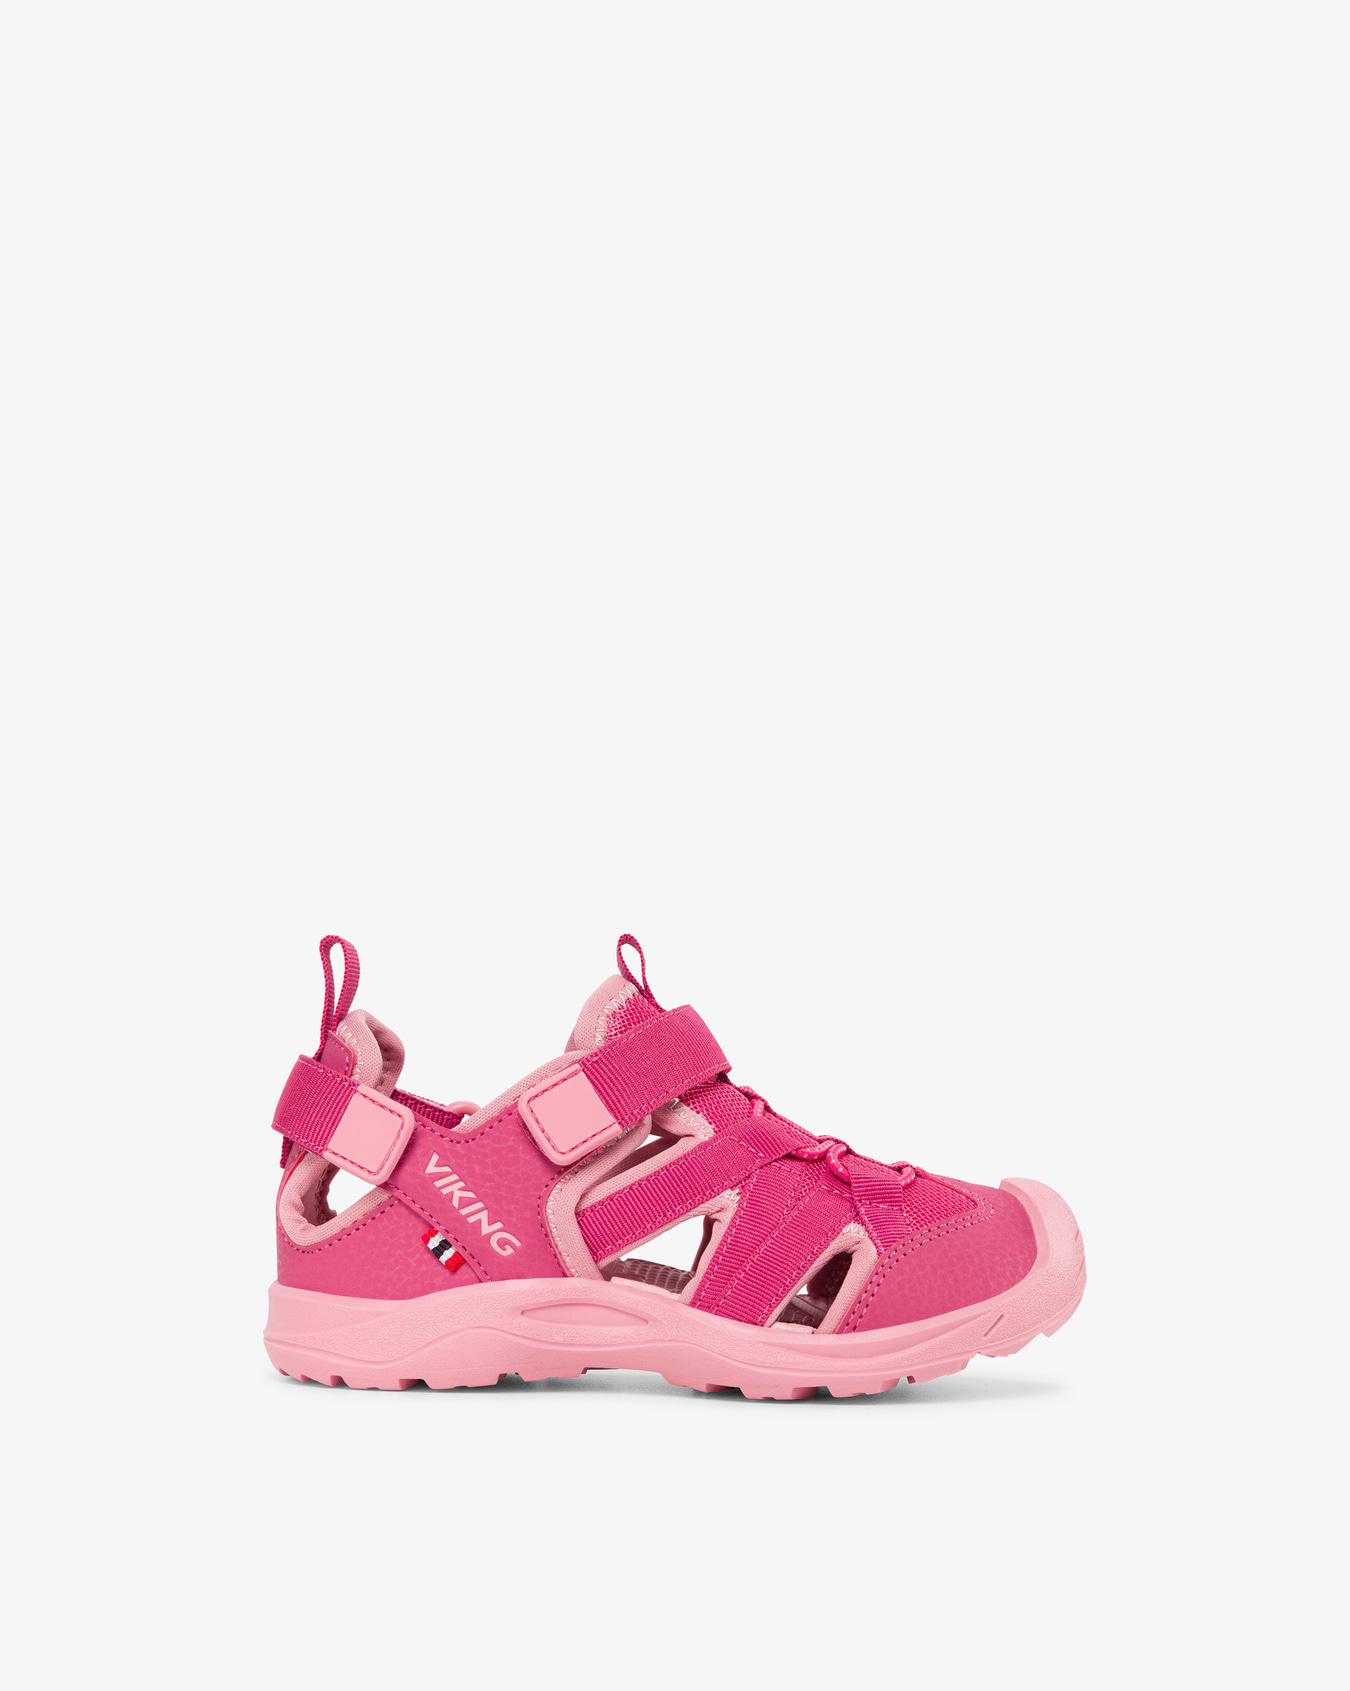 Adventure Sandal 2V Pink/Light Pink